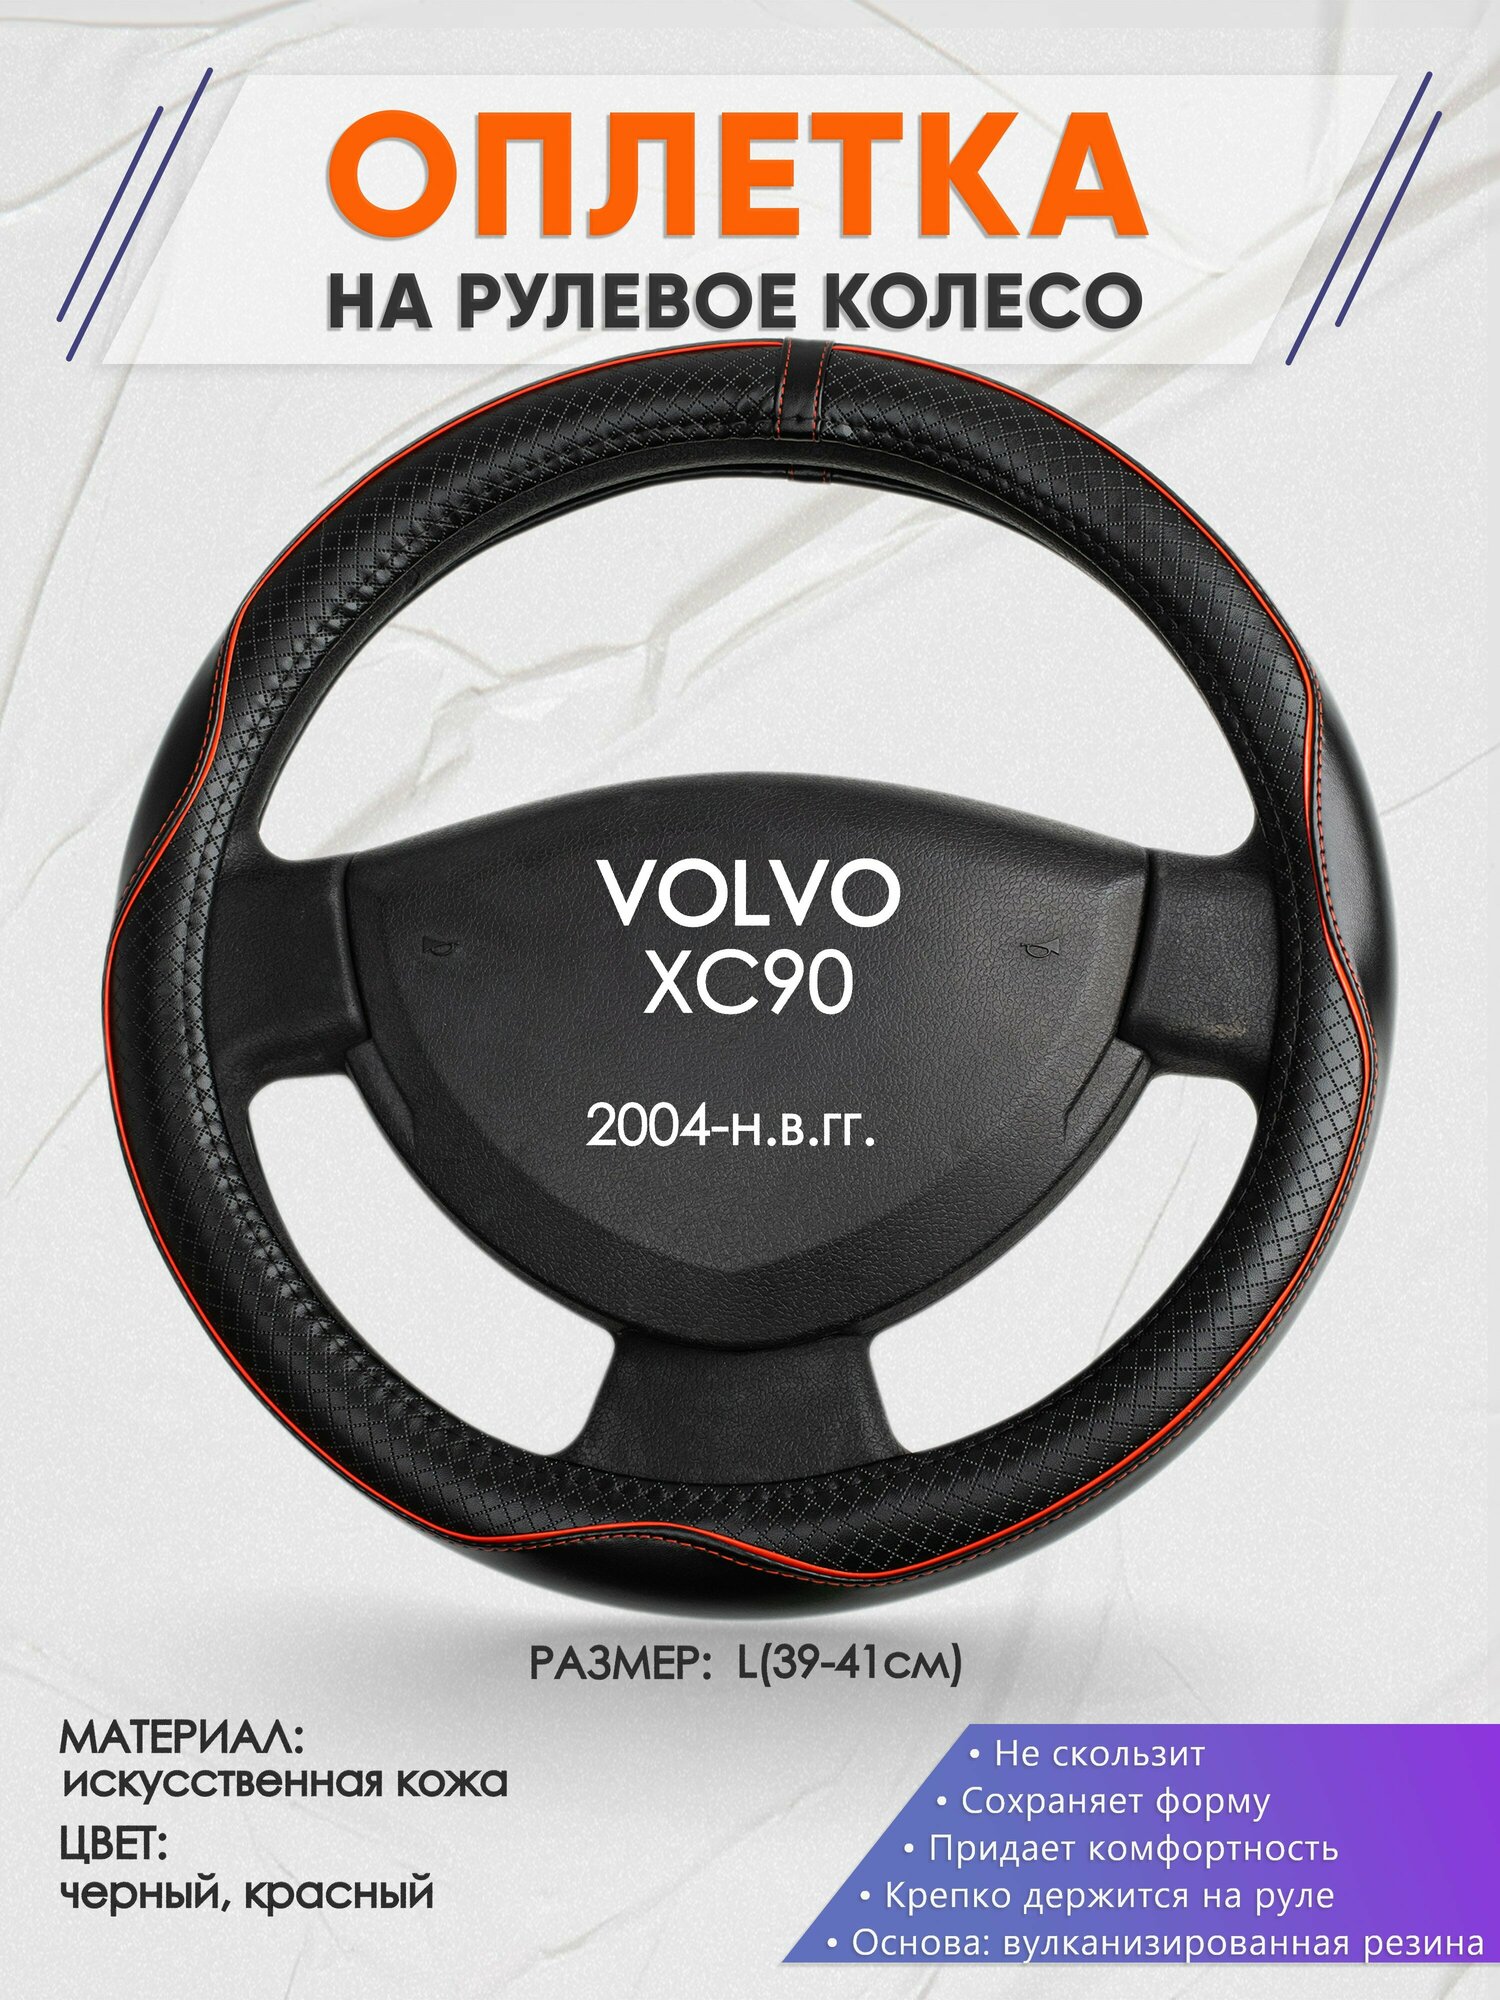 Оплетка на руль для VOLVO XC90(Вольво иксс90) 2004-н.в., L(39-41см), Искусственная кожа 86